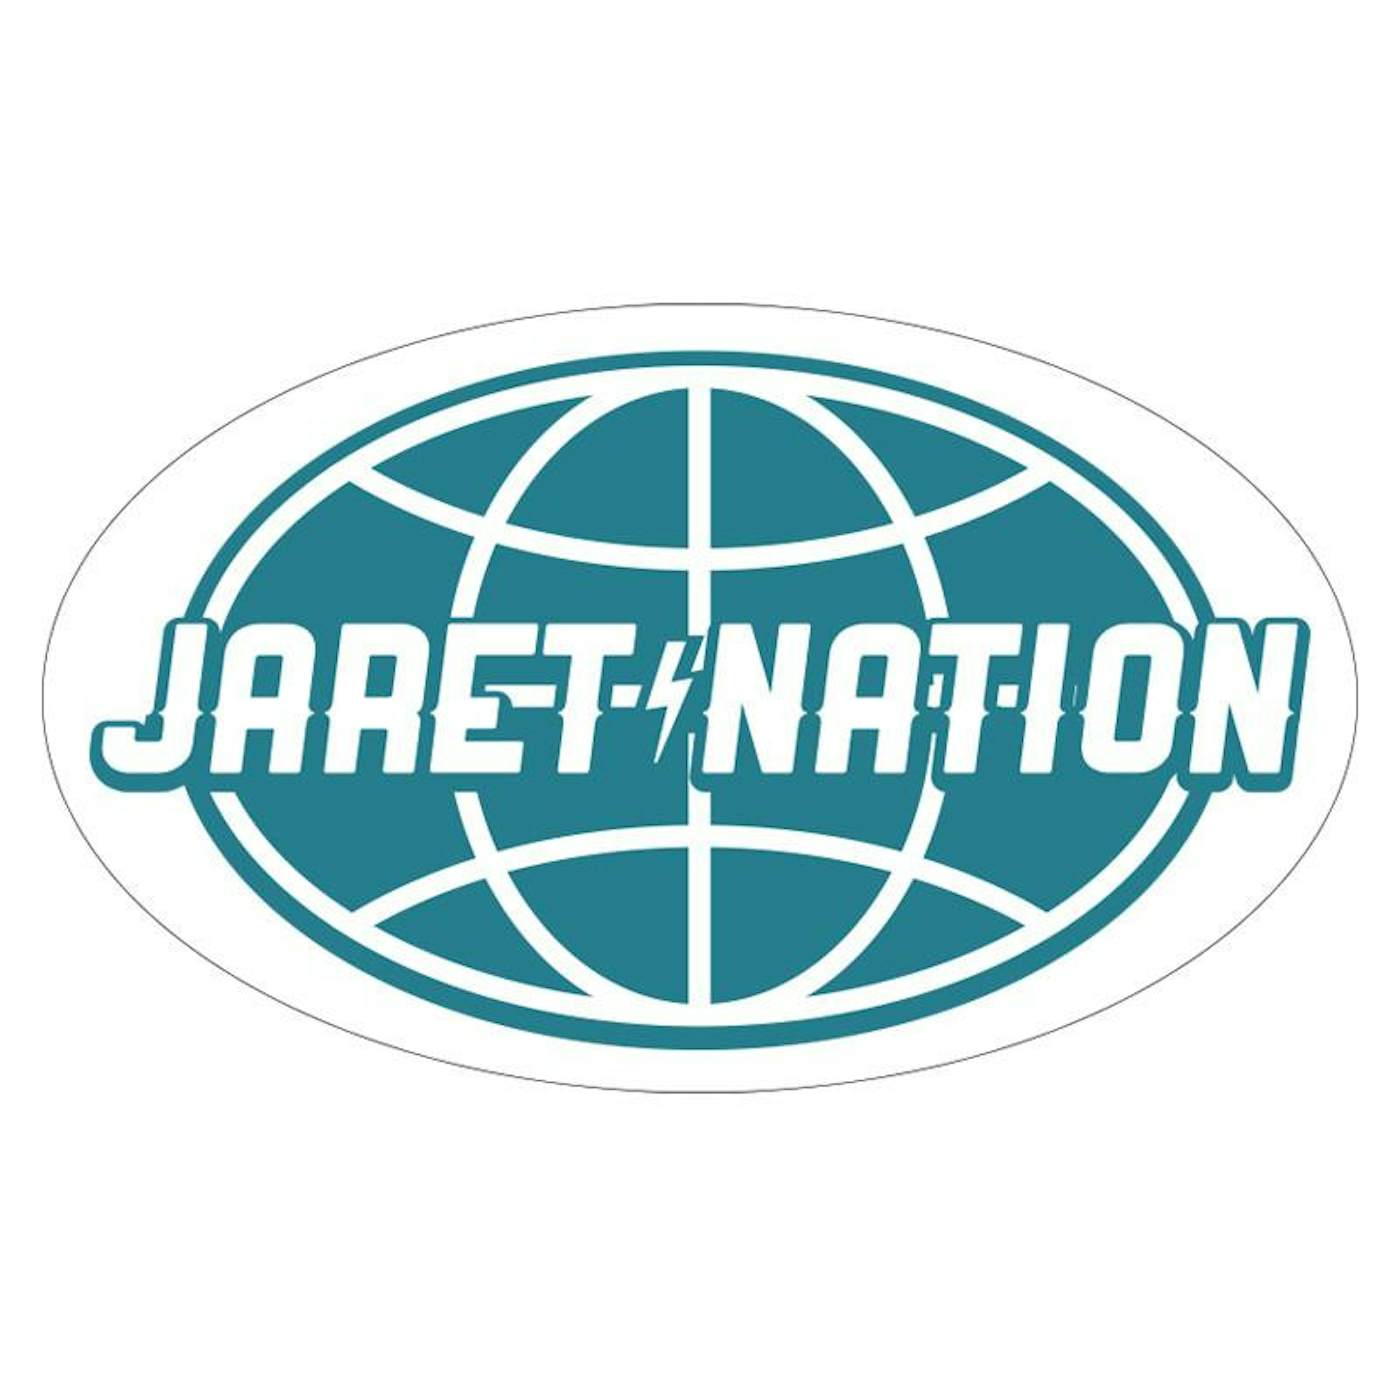 Jaret Reddick - Jaret Nation Sticker